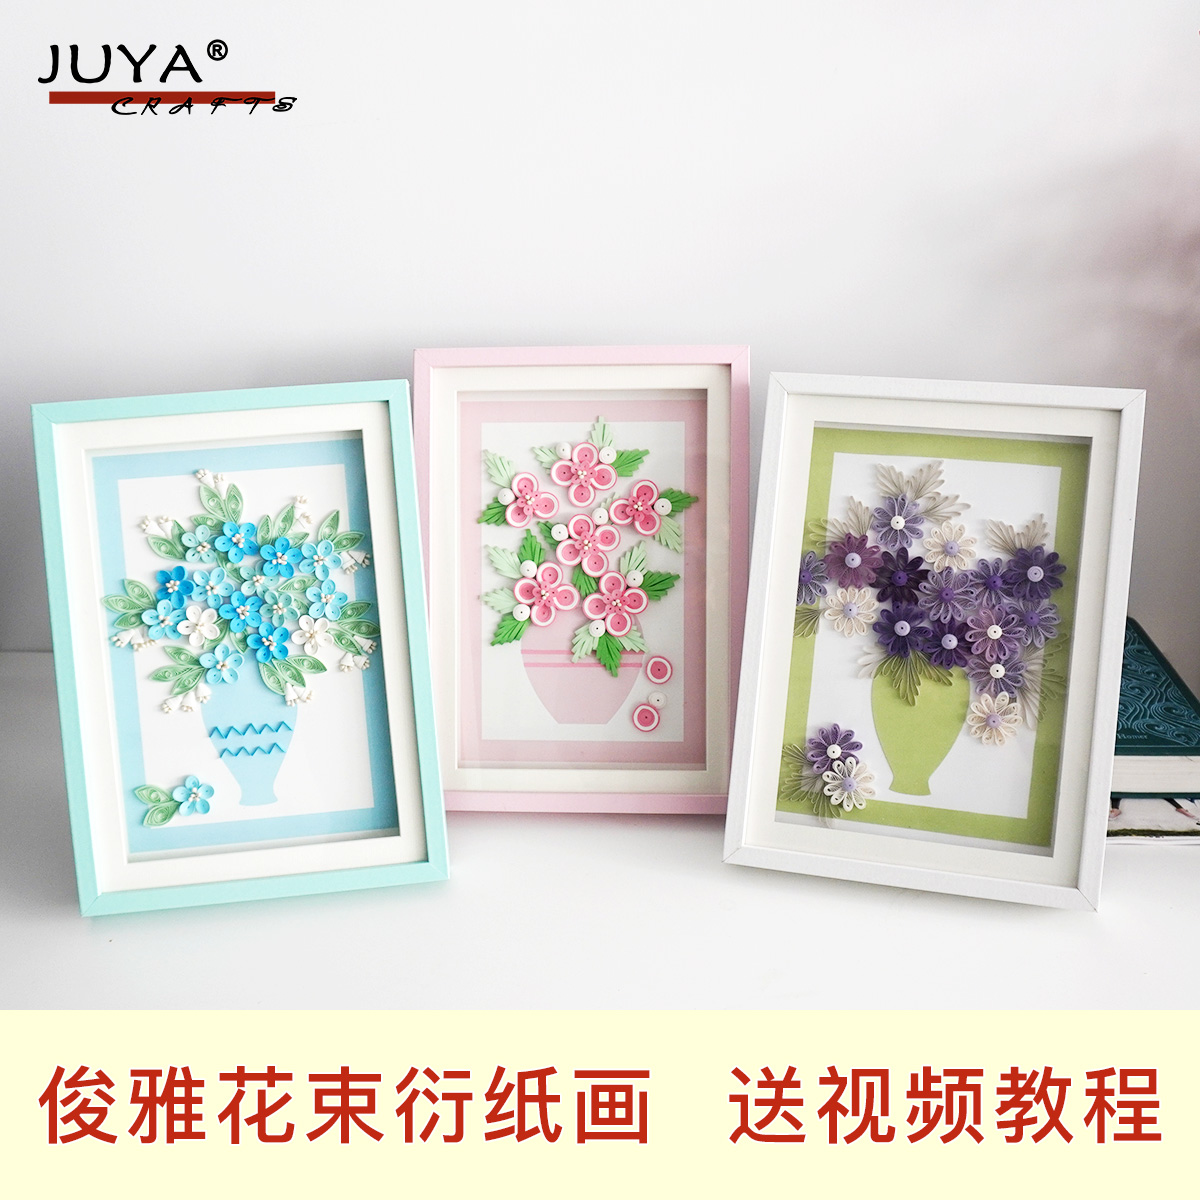 JUYA 蓝色花束粉色花束紫色花束 衍纸线稿A4衍纸材料 含珠头花蕊